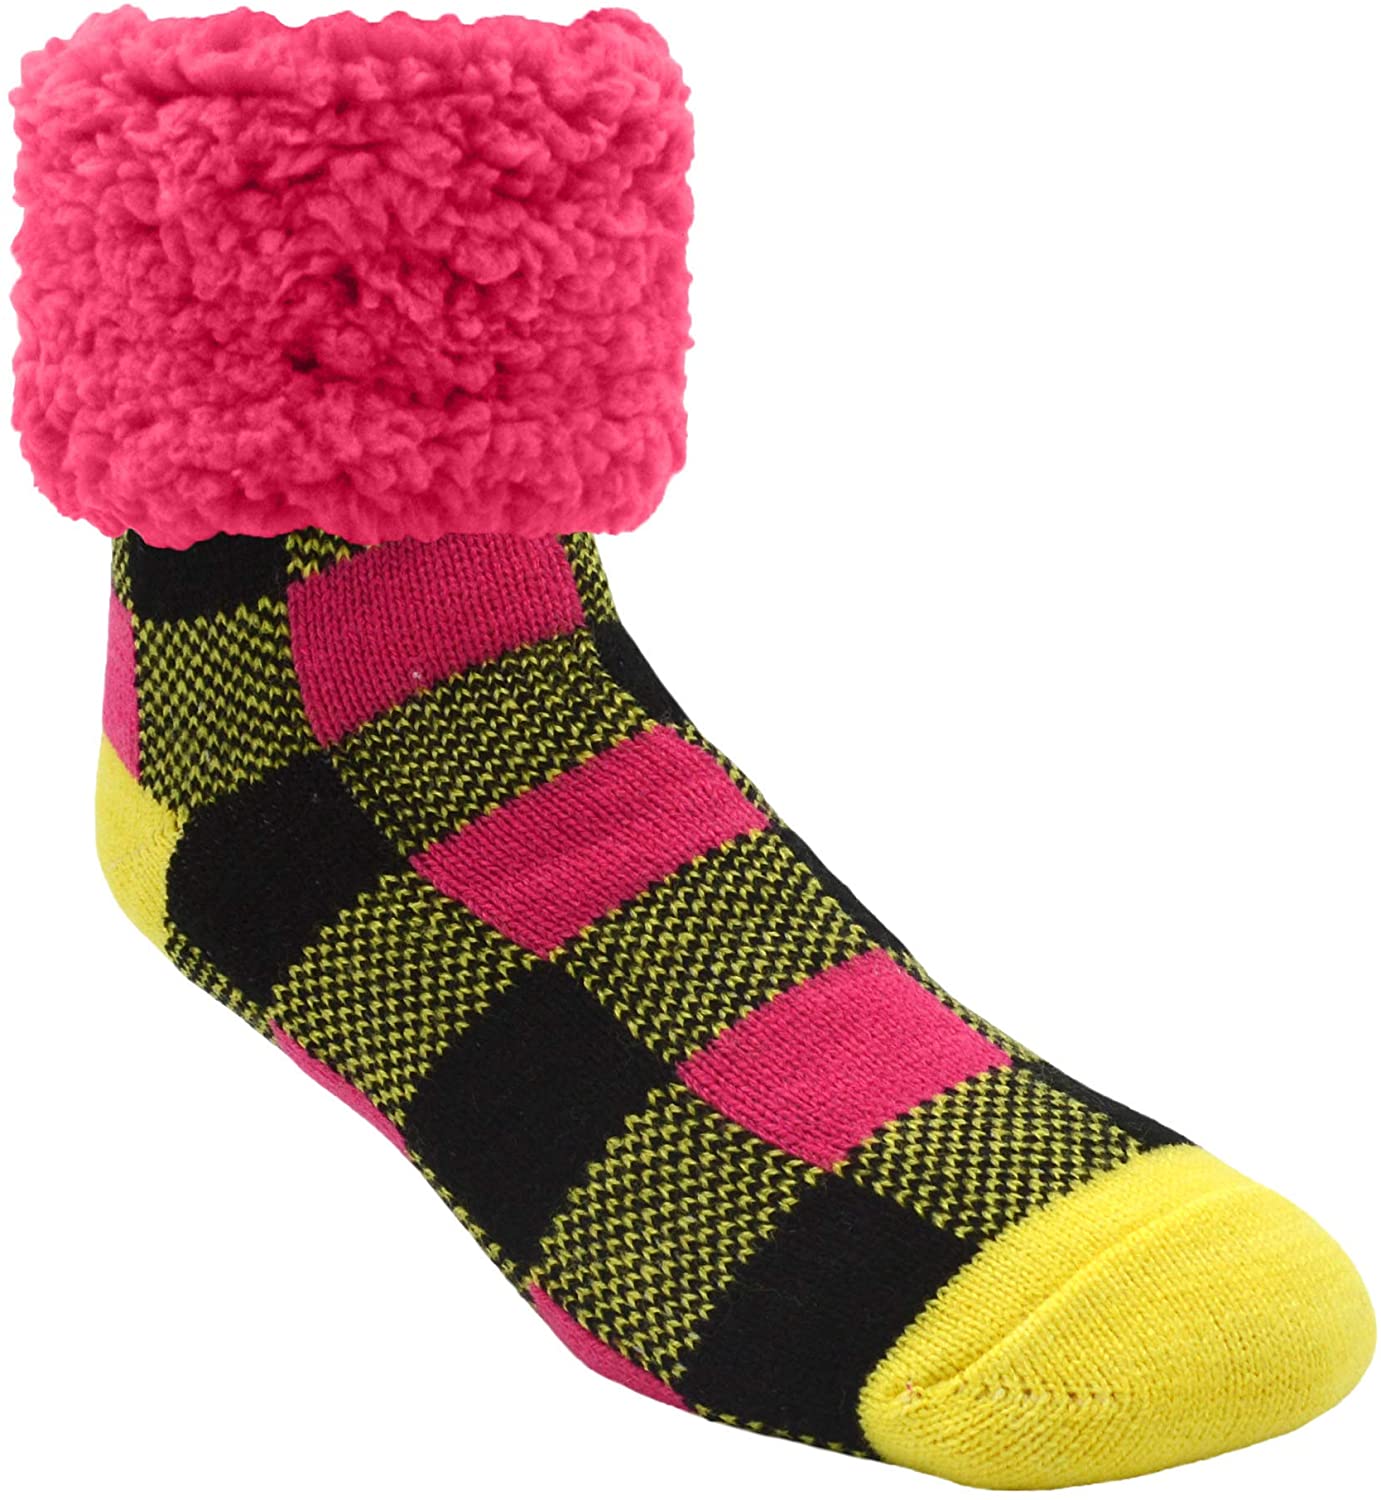 Pudus Cozy Winter Slipper Socks Women & Men w Non-Slip Grippers Faux Fur Sherpa 